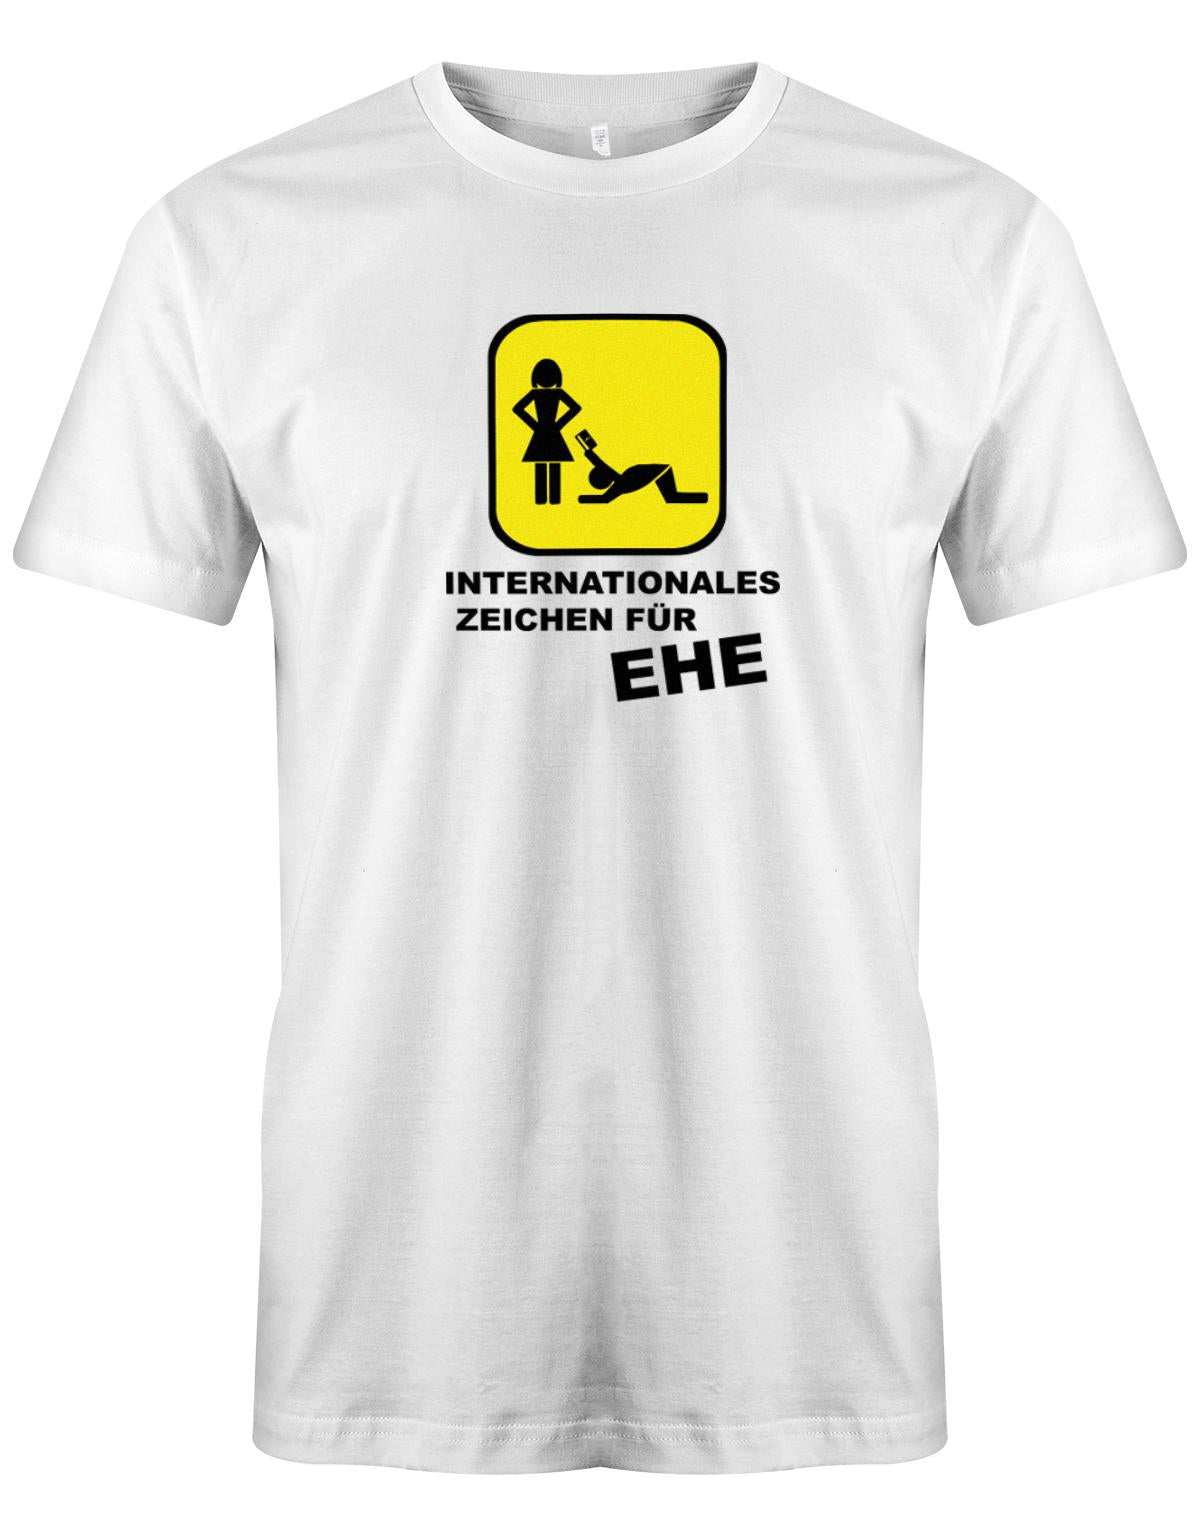 Internationales-zeichen-f-r-Ehe-Herren-Shirt-Weiss